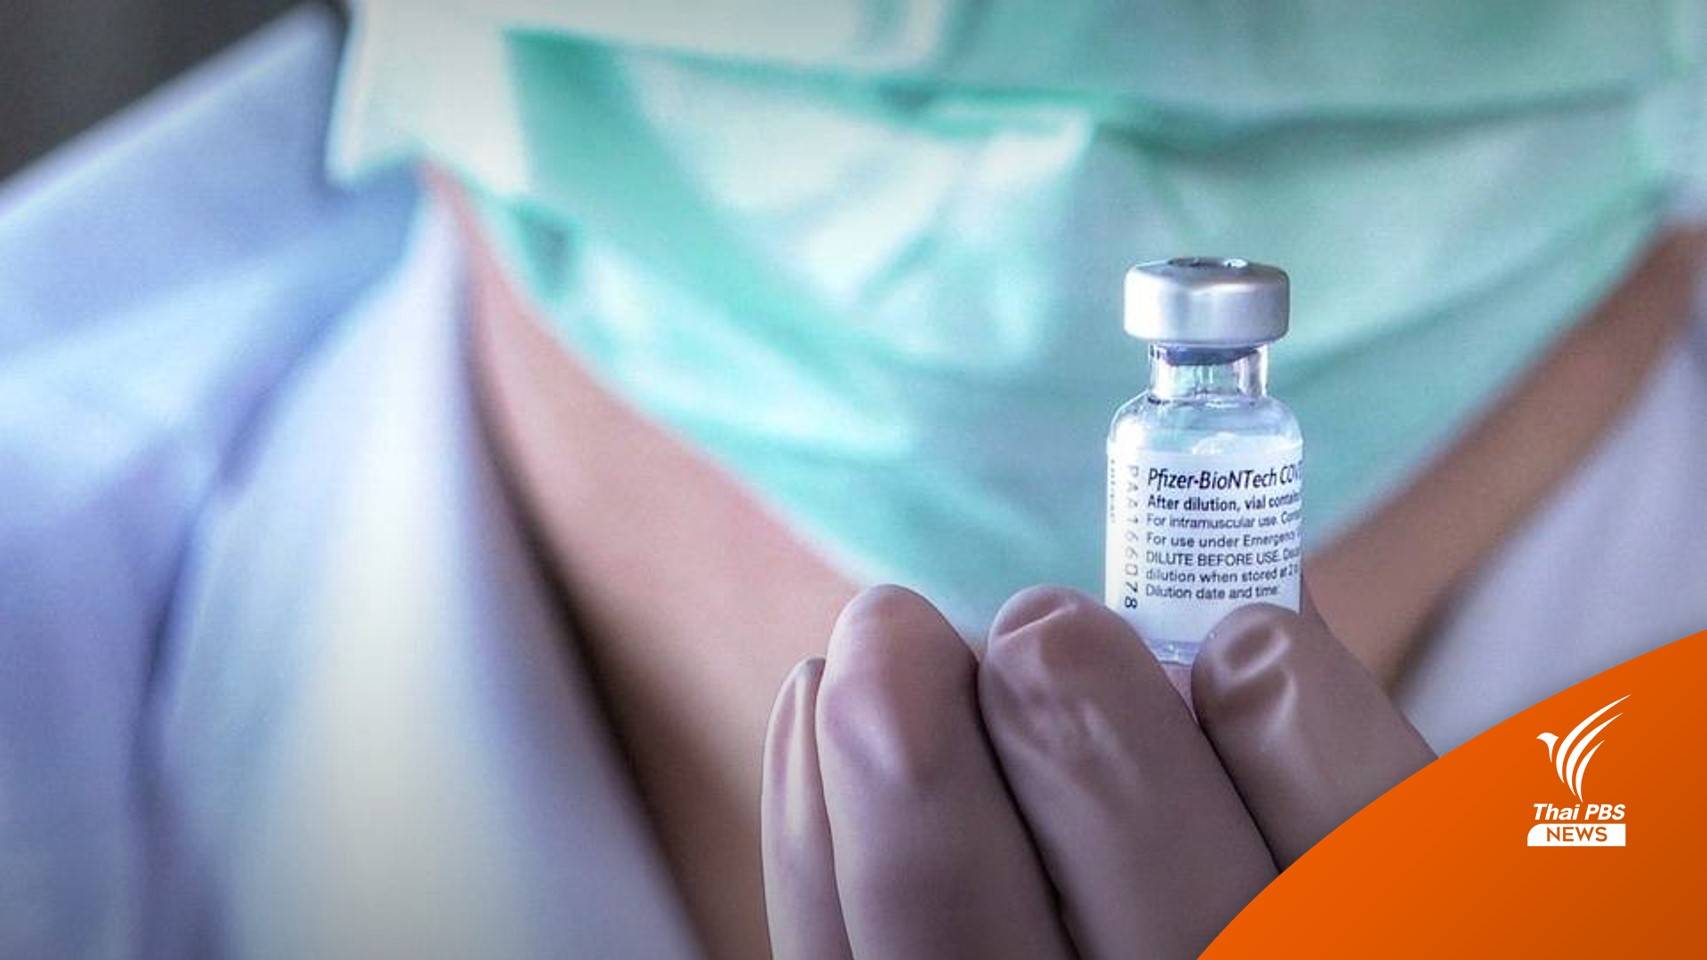 "อนุทิน" เปิด 3 จุดฉีดวัคซีนโควิดจูงใจอีก 3 ล้านคน 